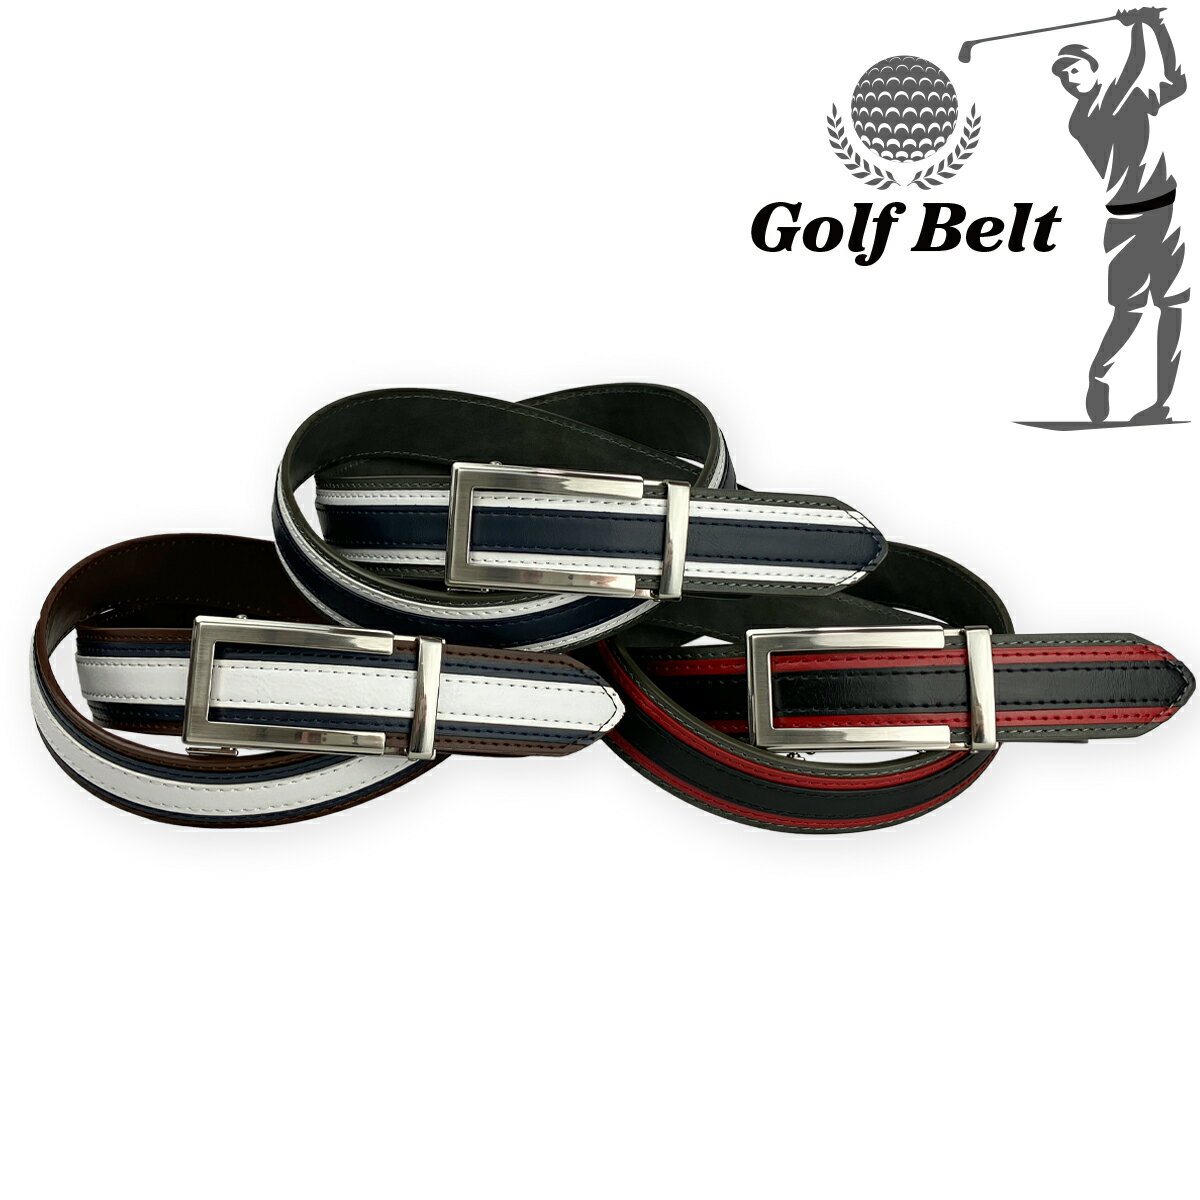 ゴルフベルト GolfBelt キーリット 配色デザイン キーリットバックル ジャストフィット ストレス軽減 35mm スコア向上 メンズ レディース Golf Belt 紳士用 婦人用 カジュアル